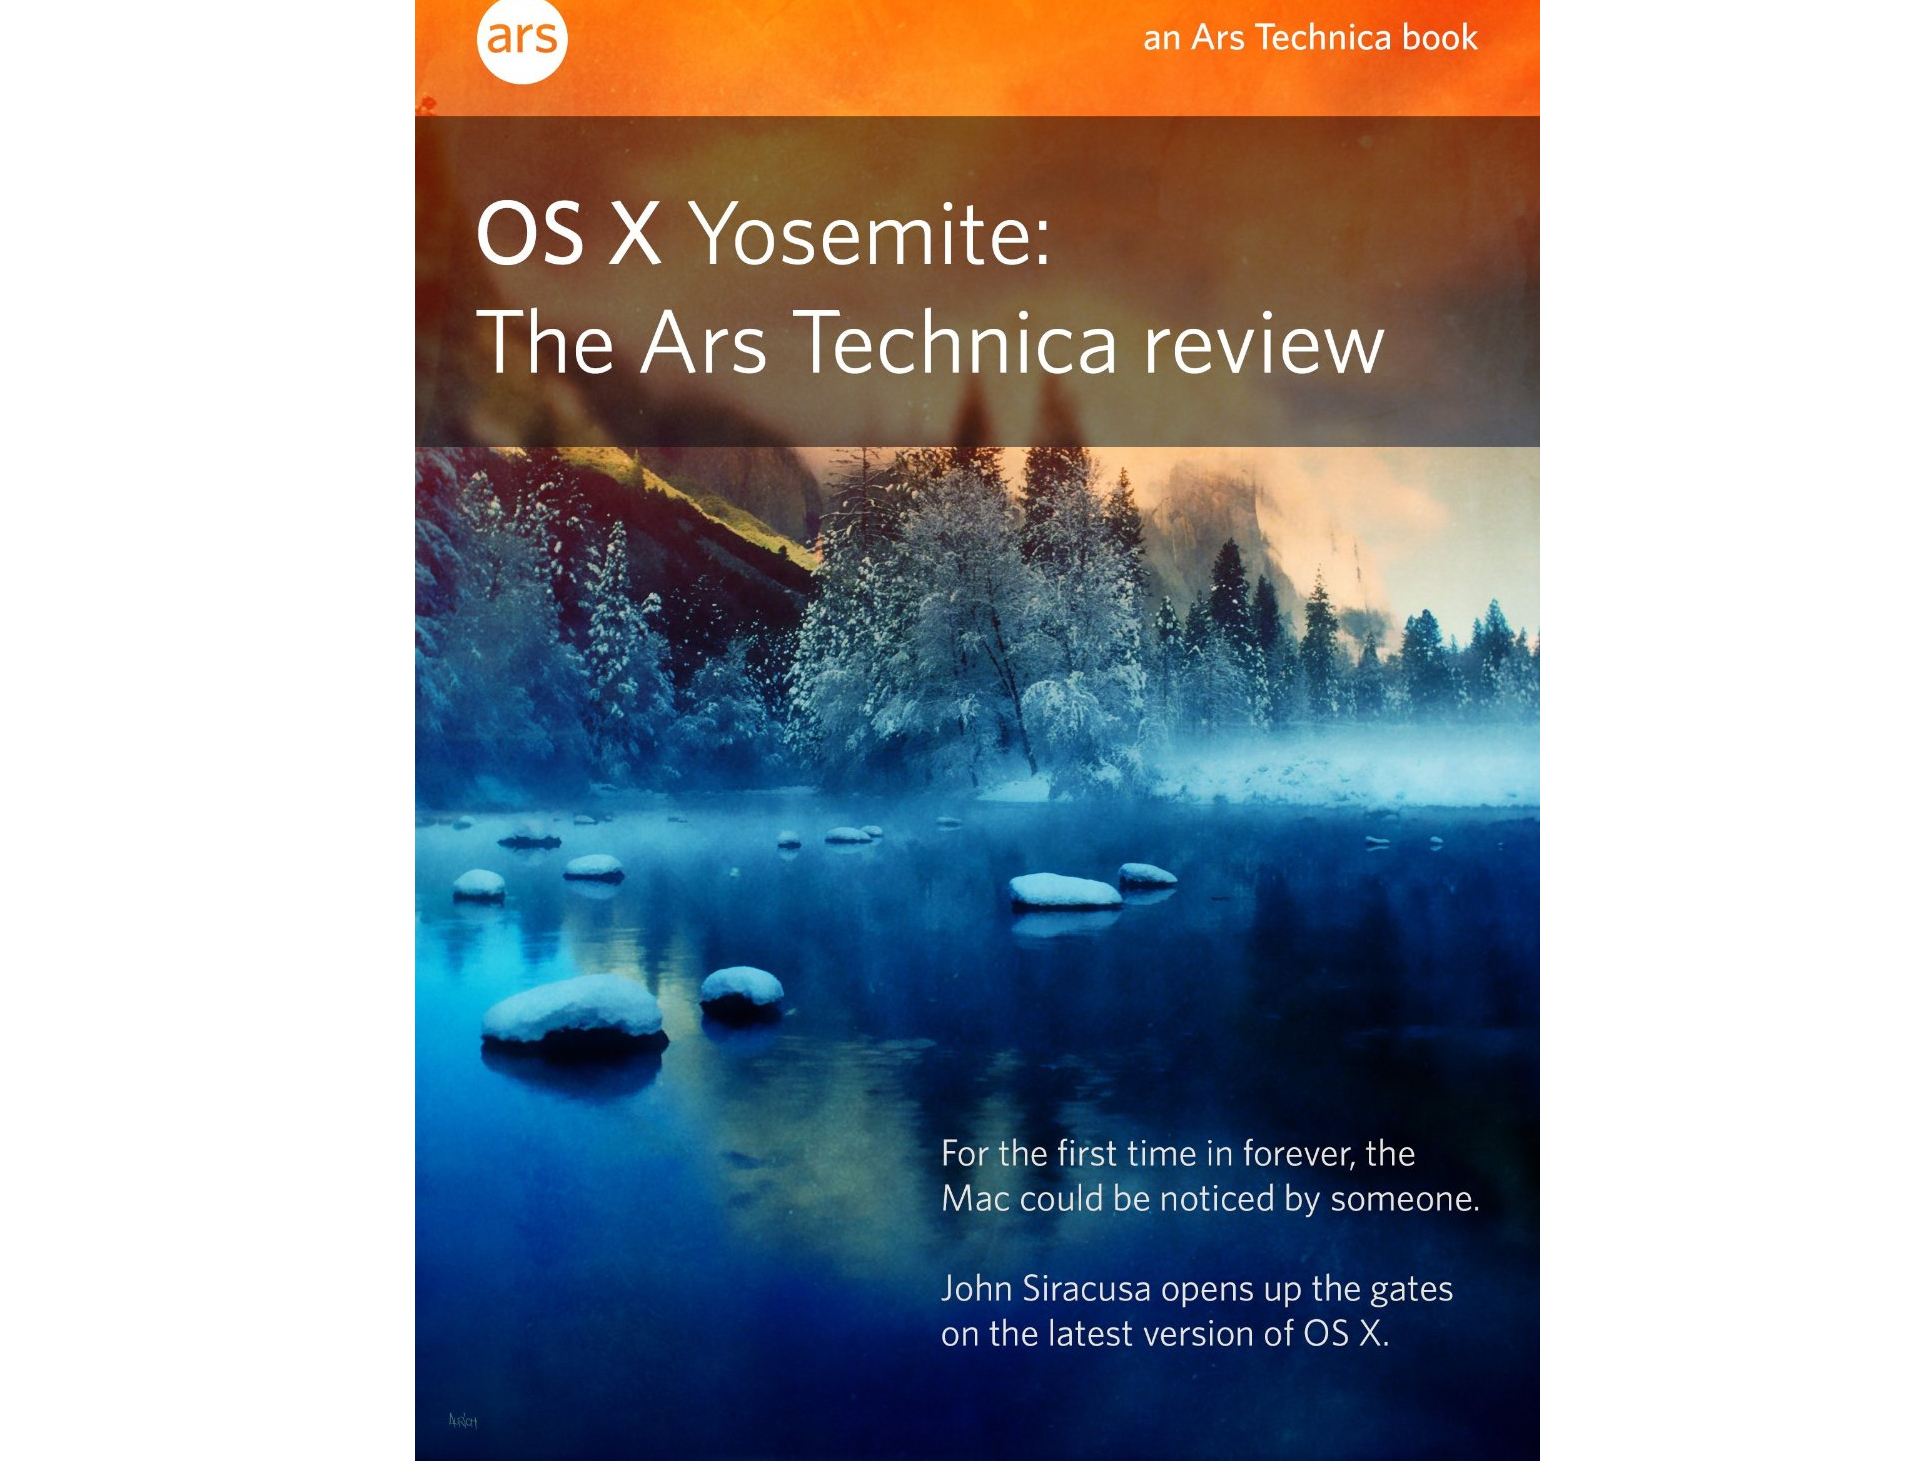 yosemite for mac review